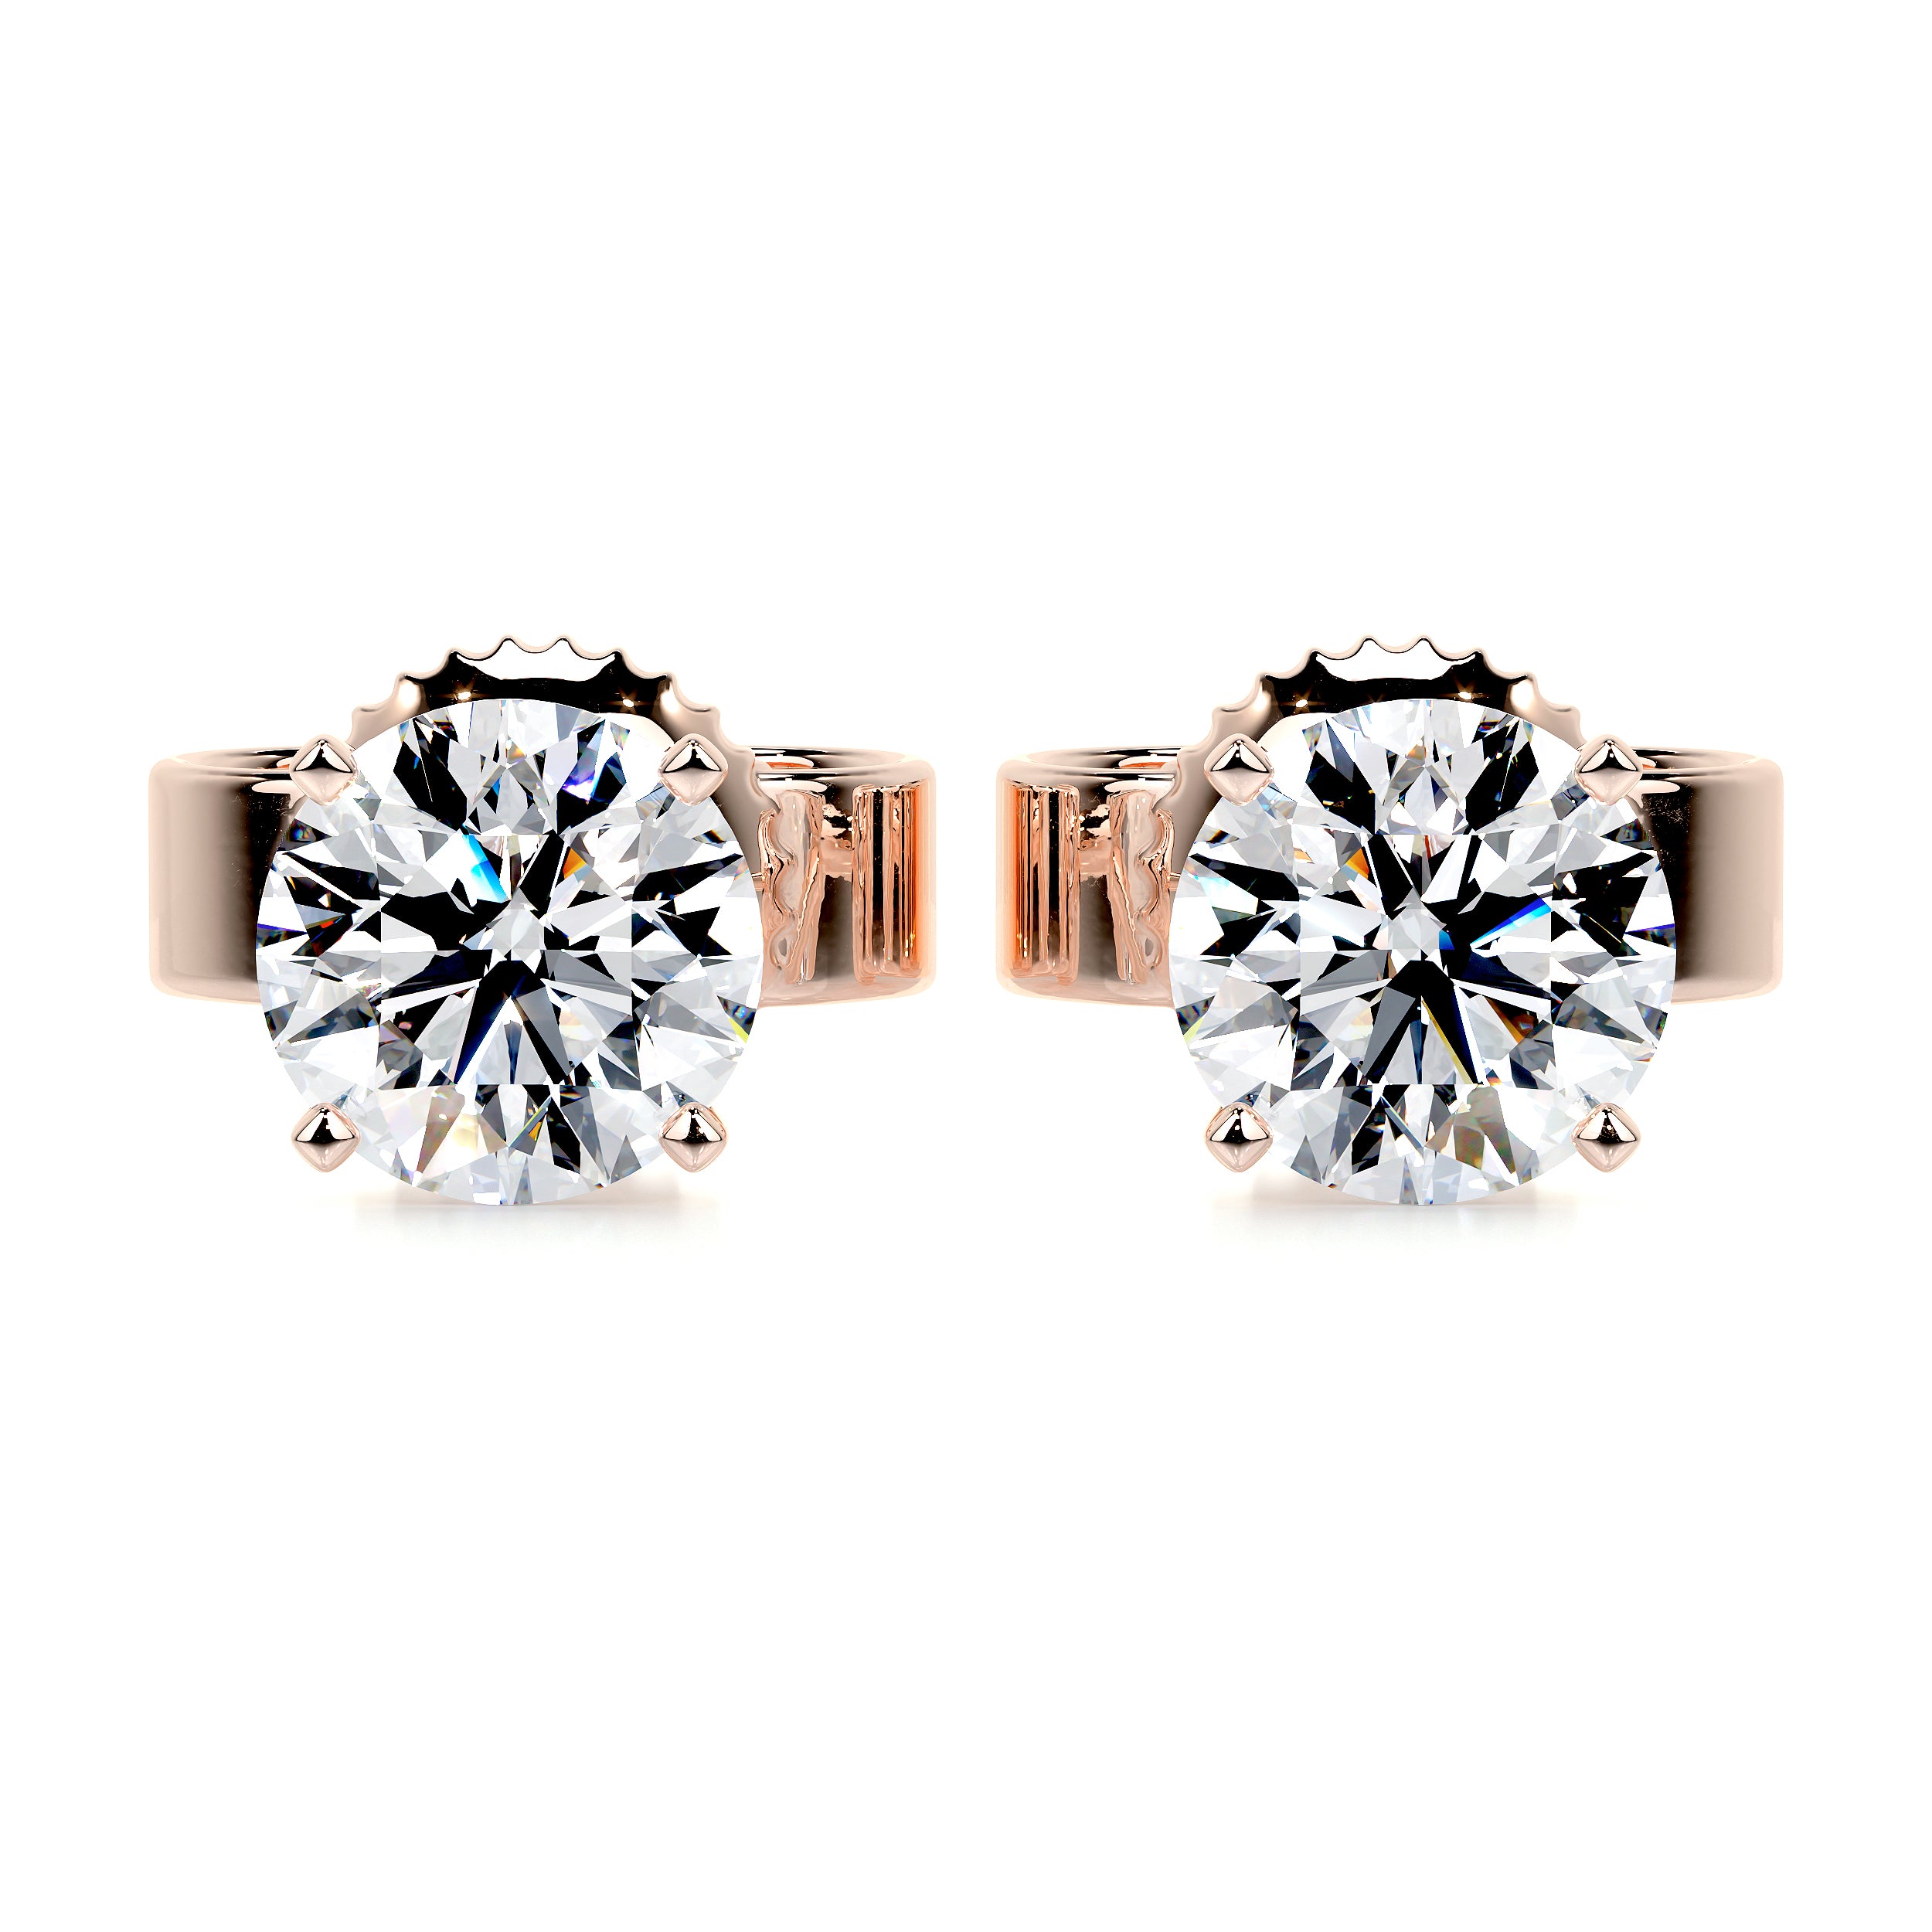 Allen Diamond Earrings -14K Rose Gold